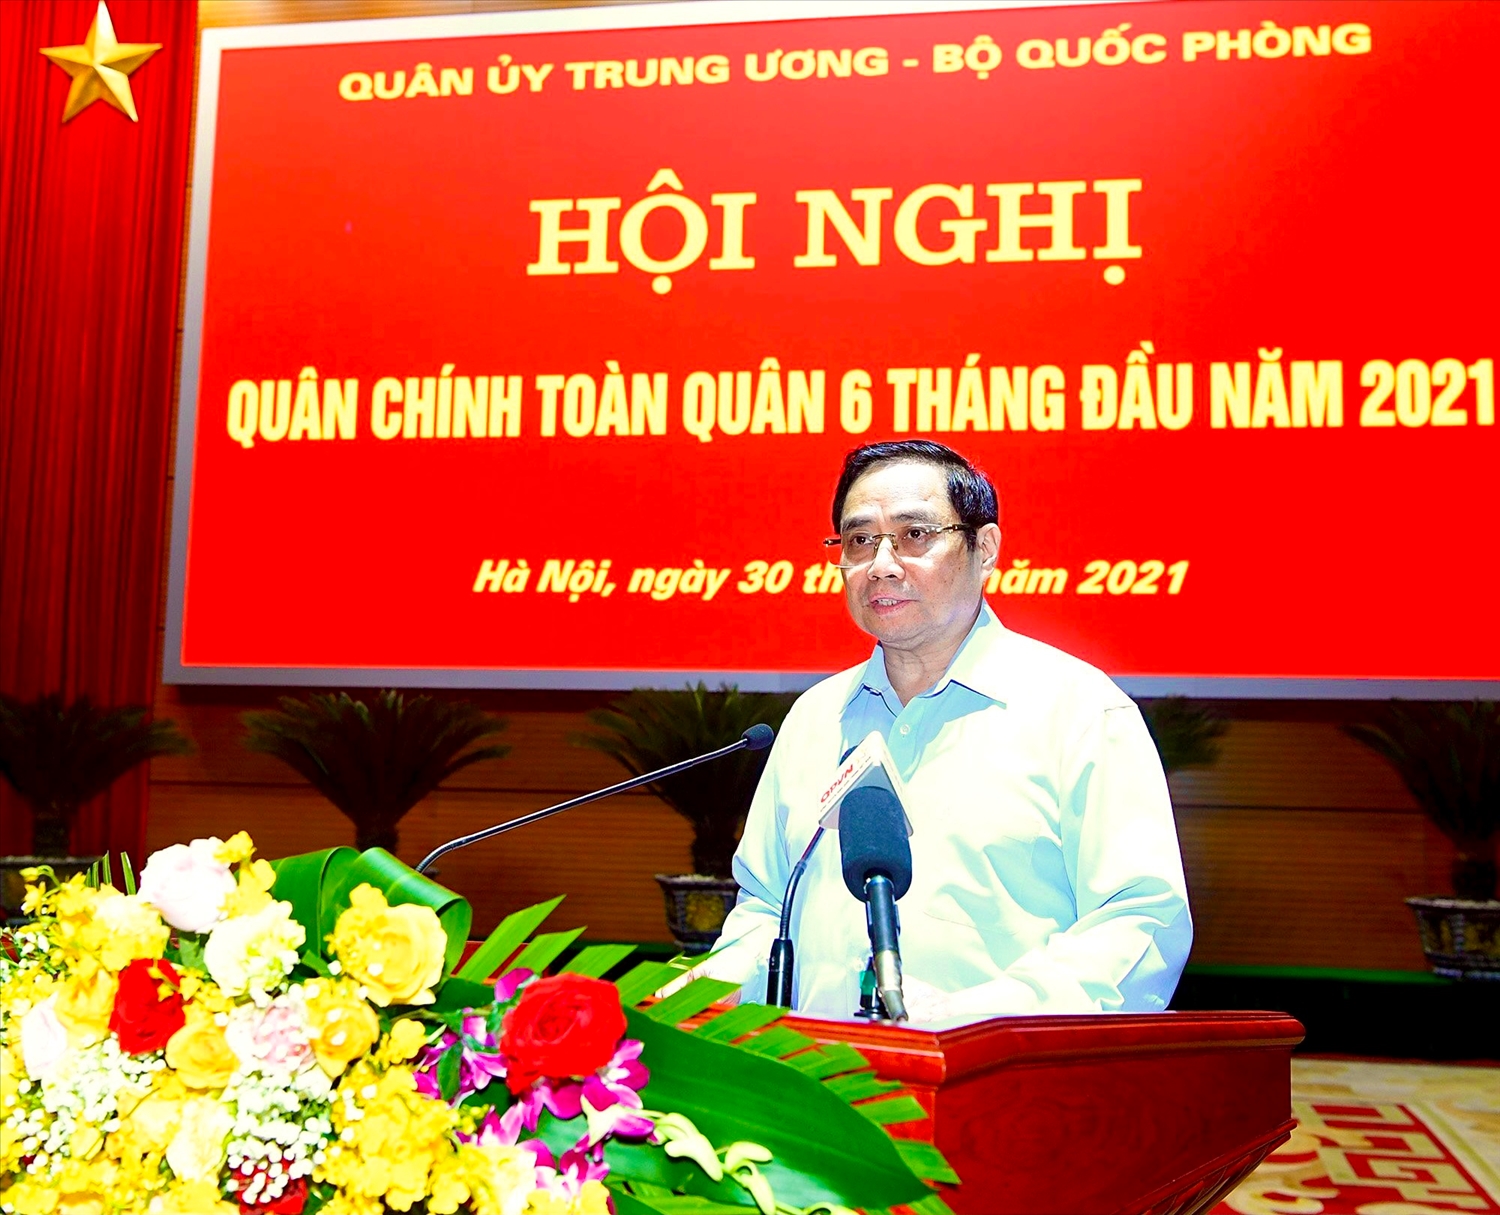 Thủ tướng Chính phủ Phạm Minh Chính: Quân đội nhân dân Việt Nam đã hoàn thành tốt các nhiệm vụ, tạo chuyển biến trên các mặt công tác. - Ảnh: VGP/Nhật Bắc